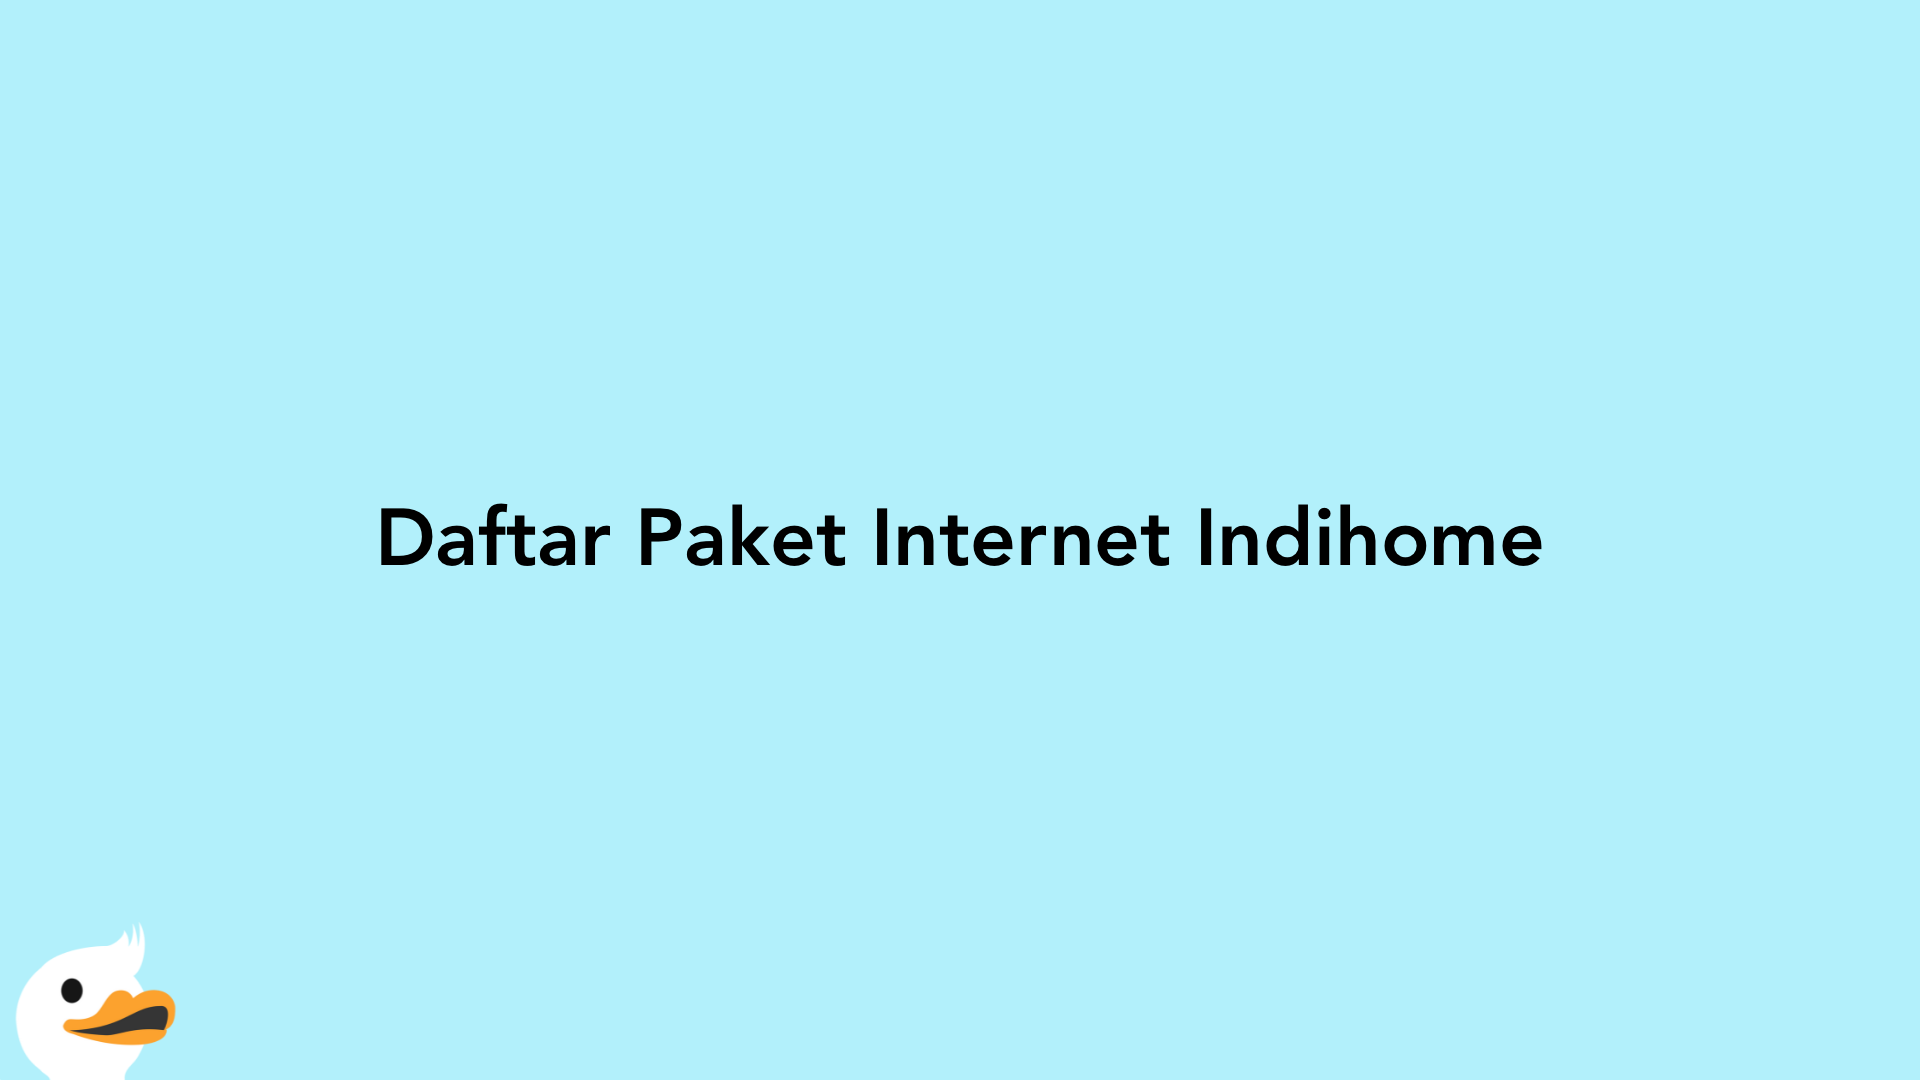 Daftar Paket Internet Indihome